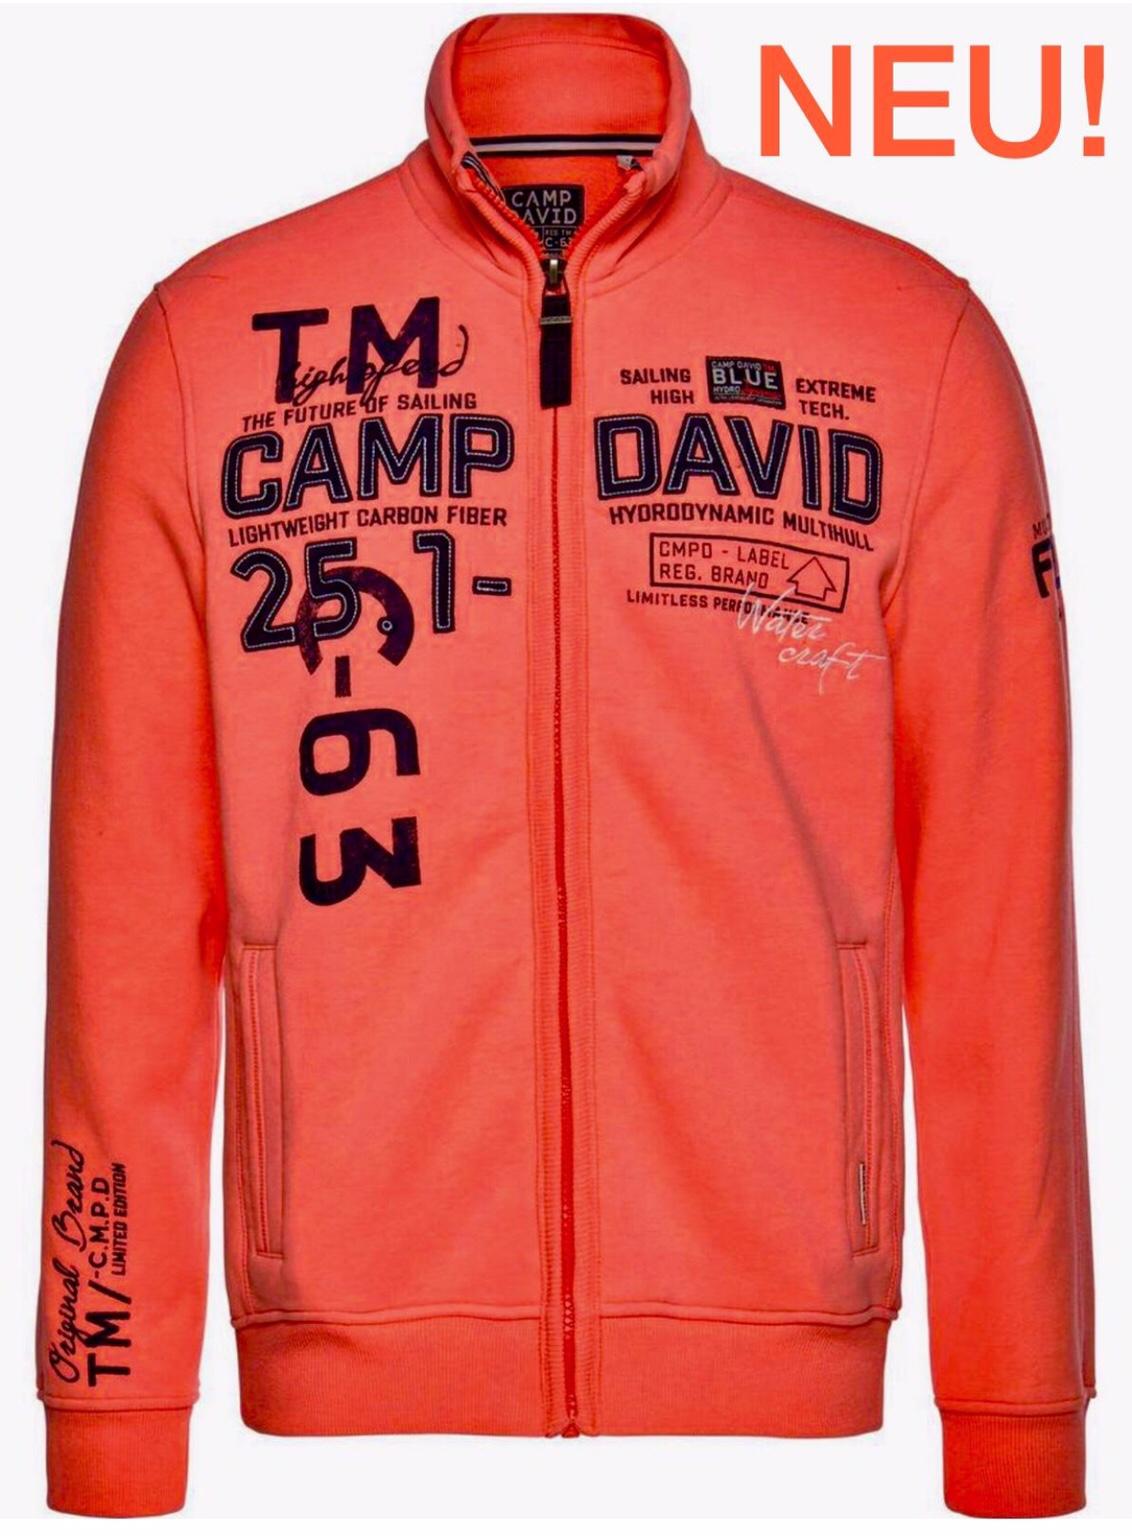 Brandneu Camp David Sweatjacke blau/rot/weiß Jacke L XL XXL 2XL XXXL 3XL Neu